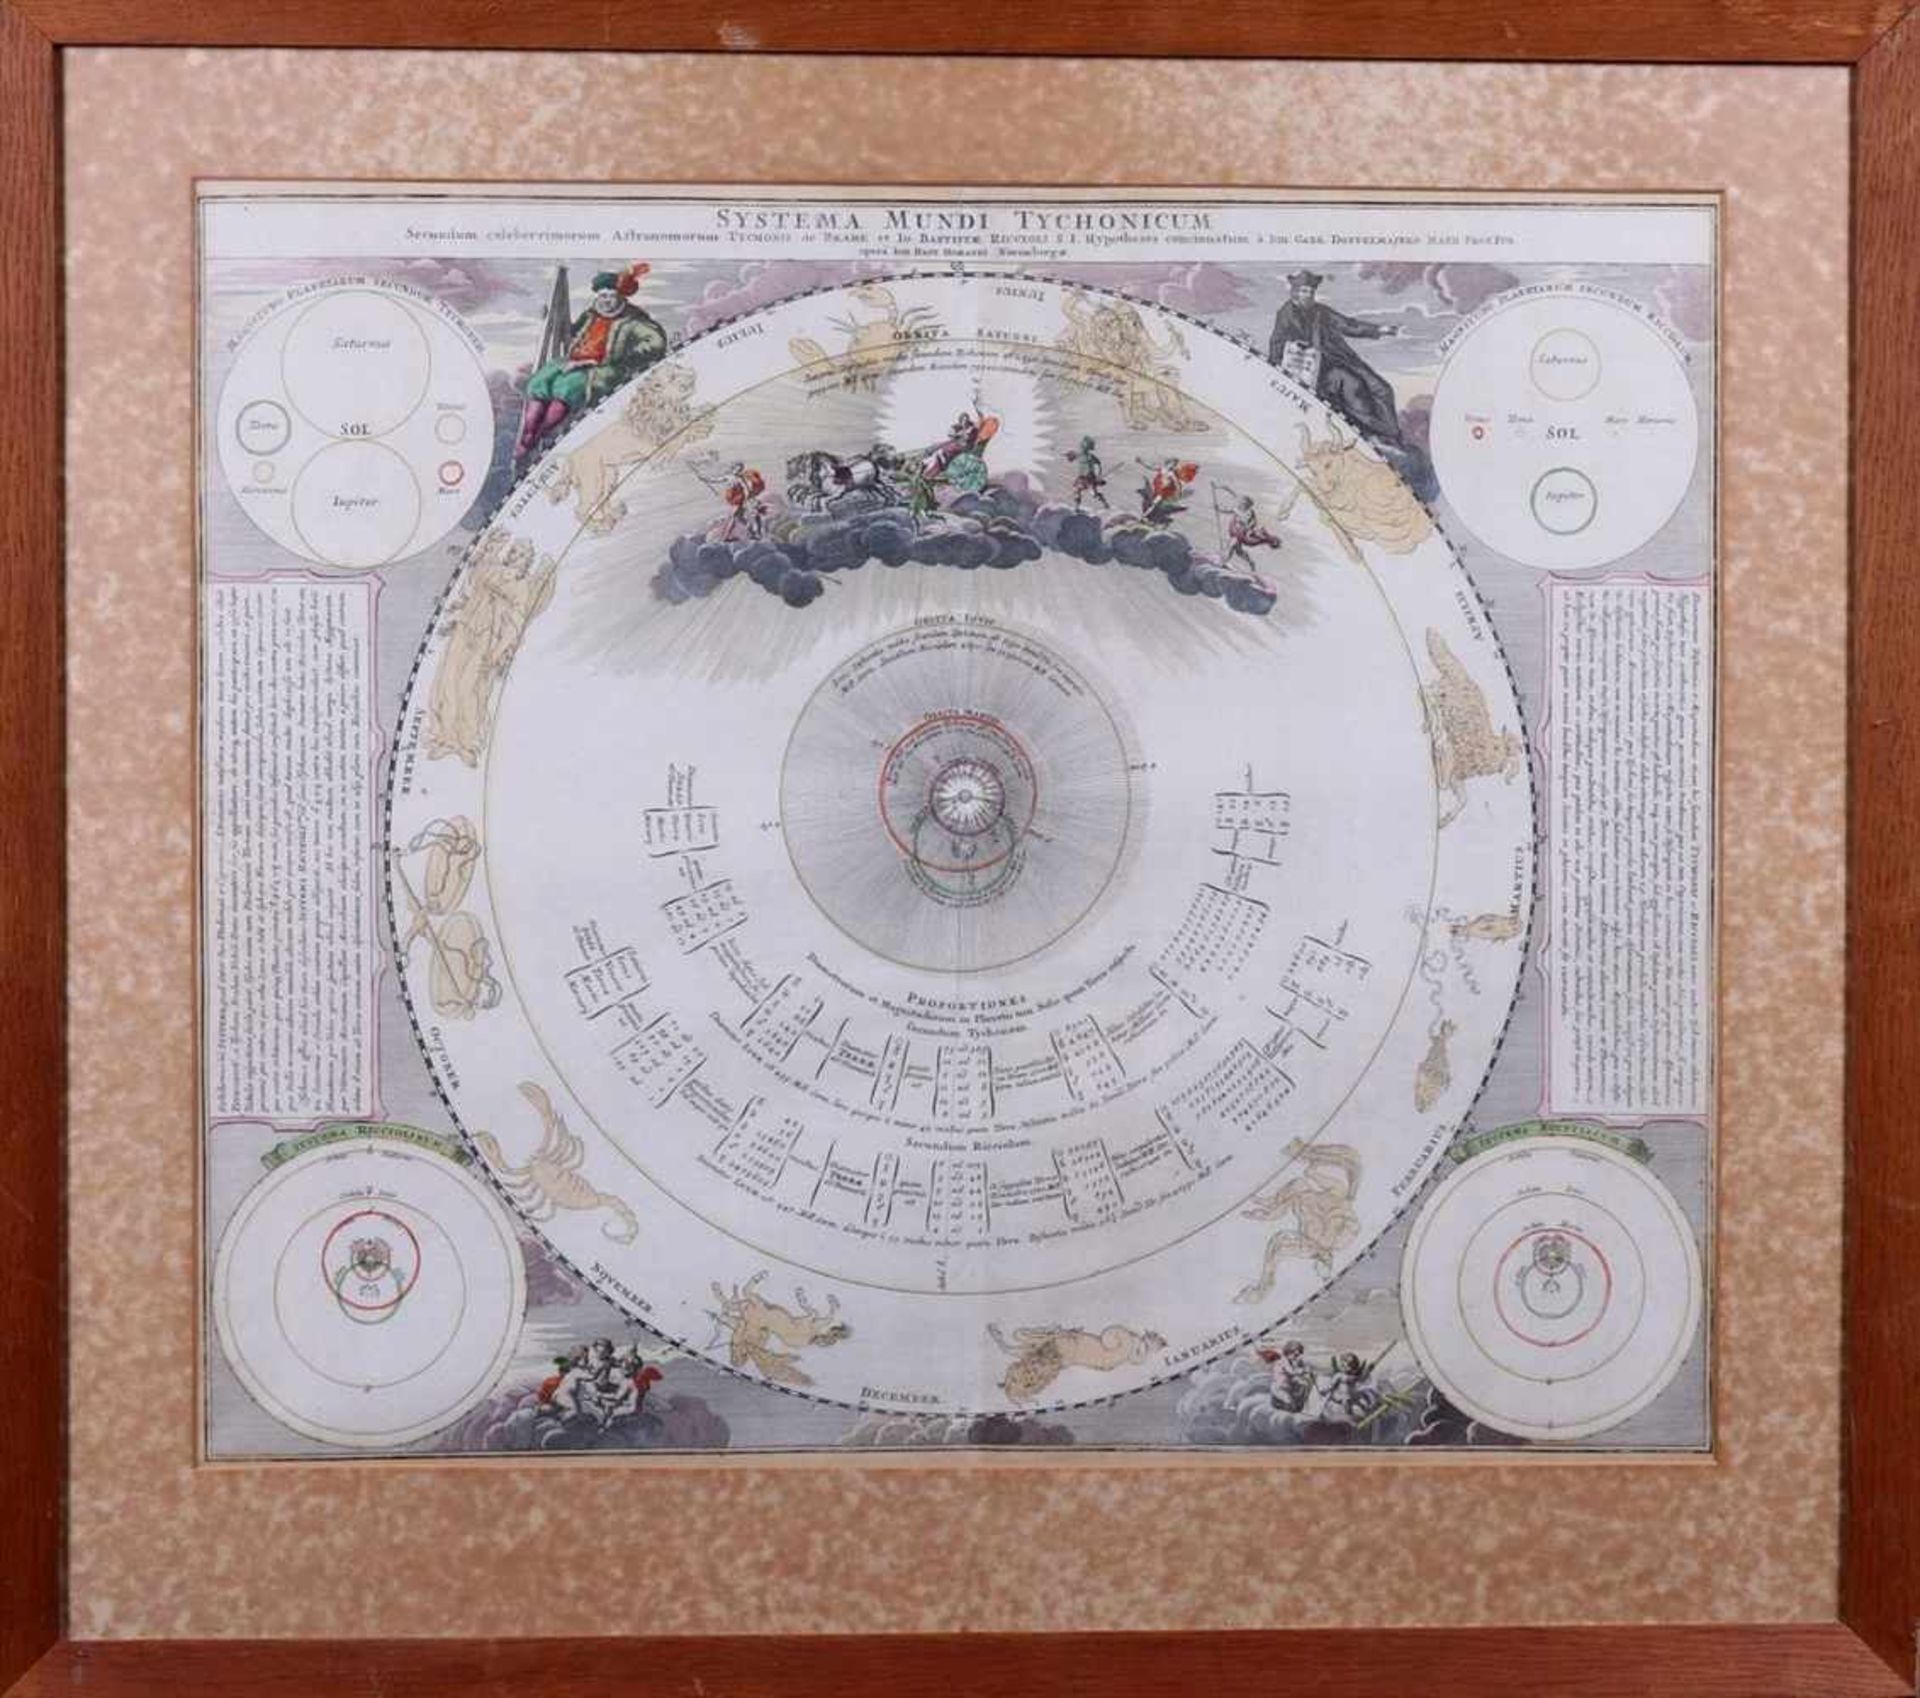 Himmelskarte "Systema mundi Tychonicum"nach Johann Gabriel Doppelmaier bei Johann Baptist Homann